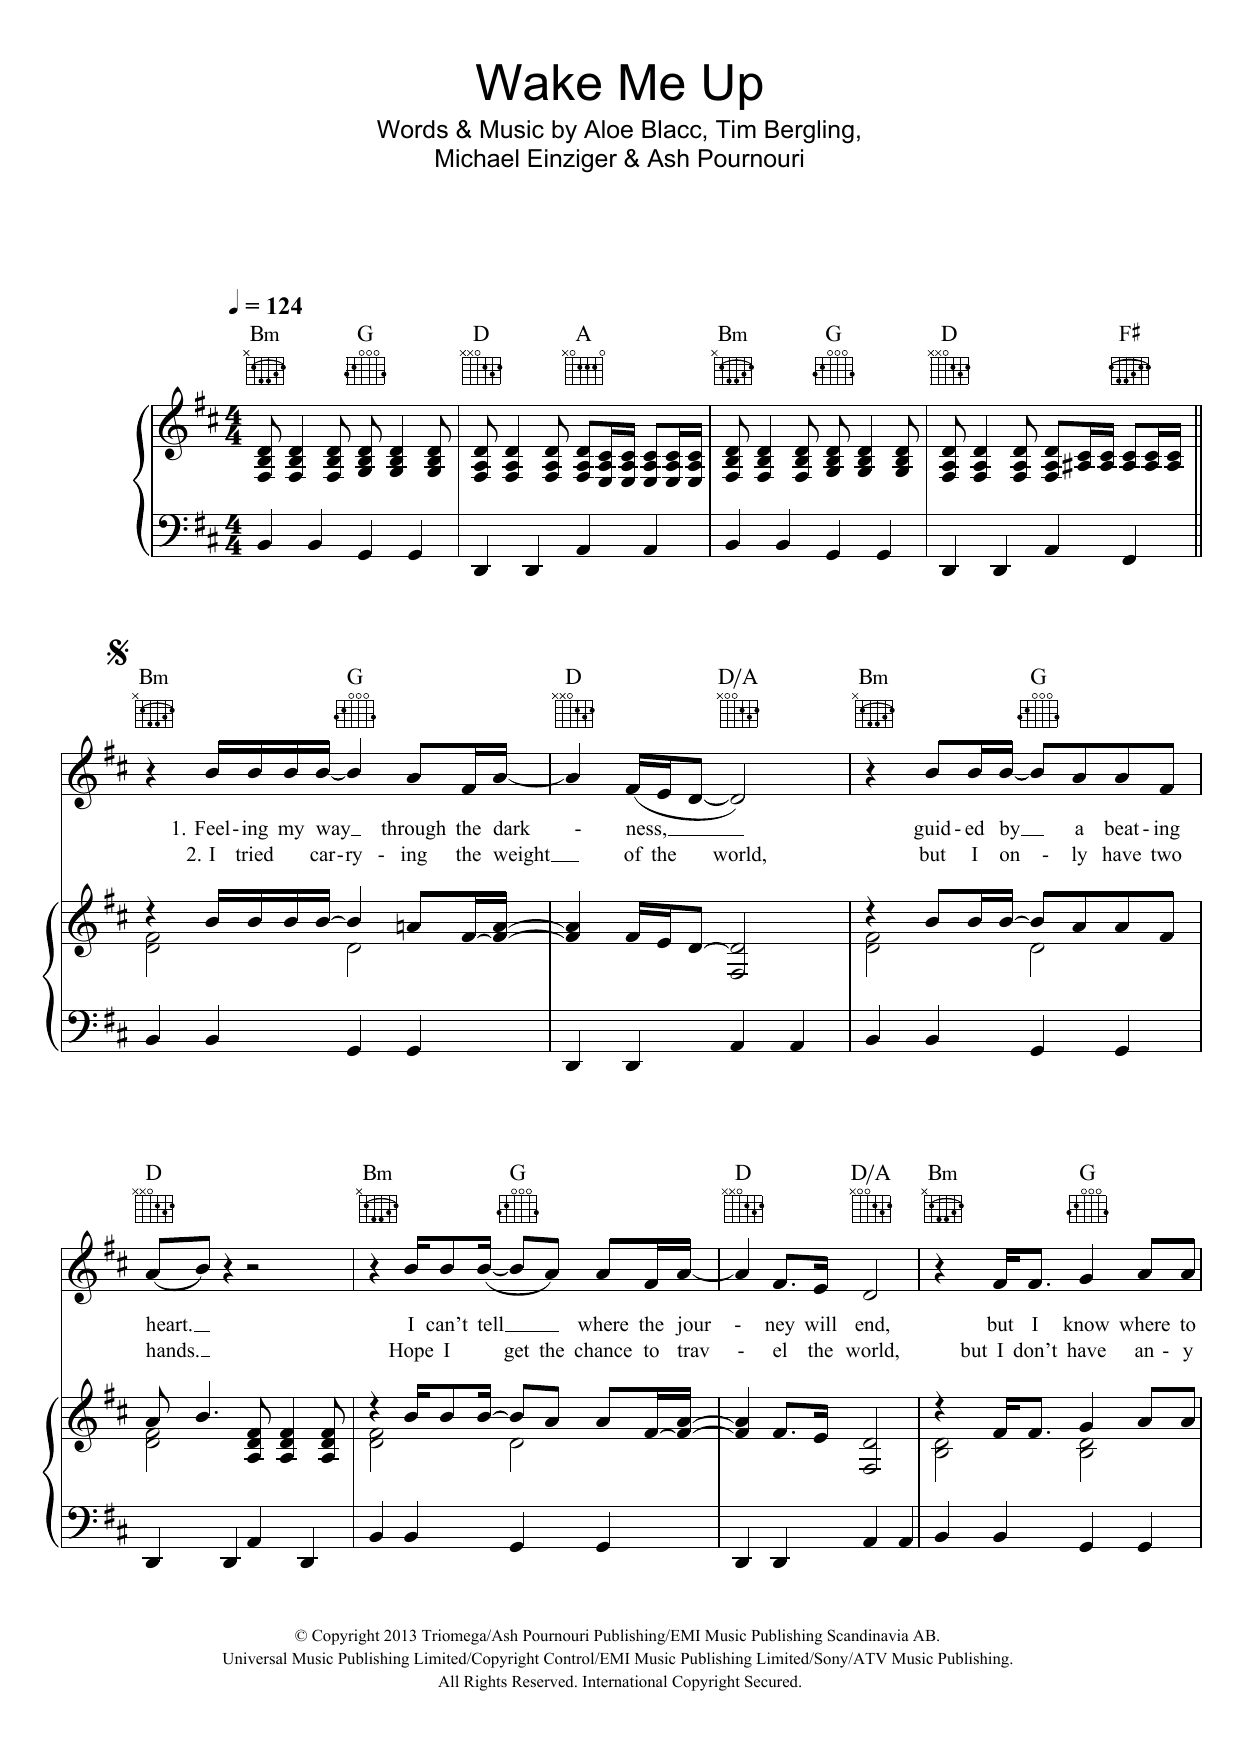 Avicii Wake Me Up sheet music notes and chords arranged for Ukulele